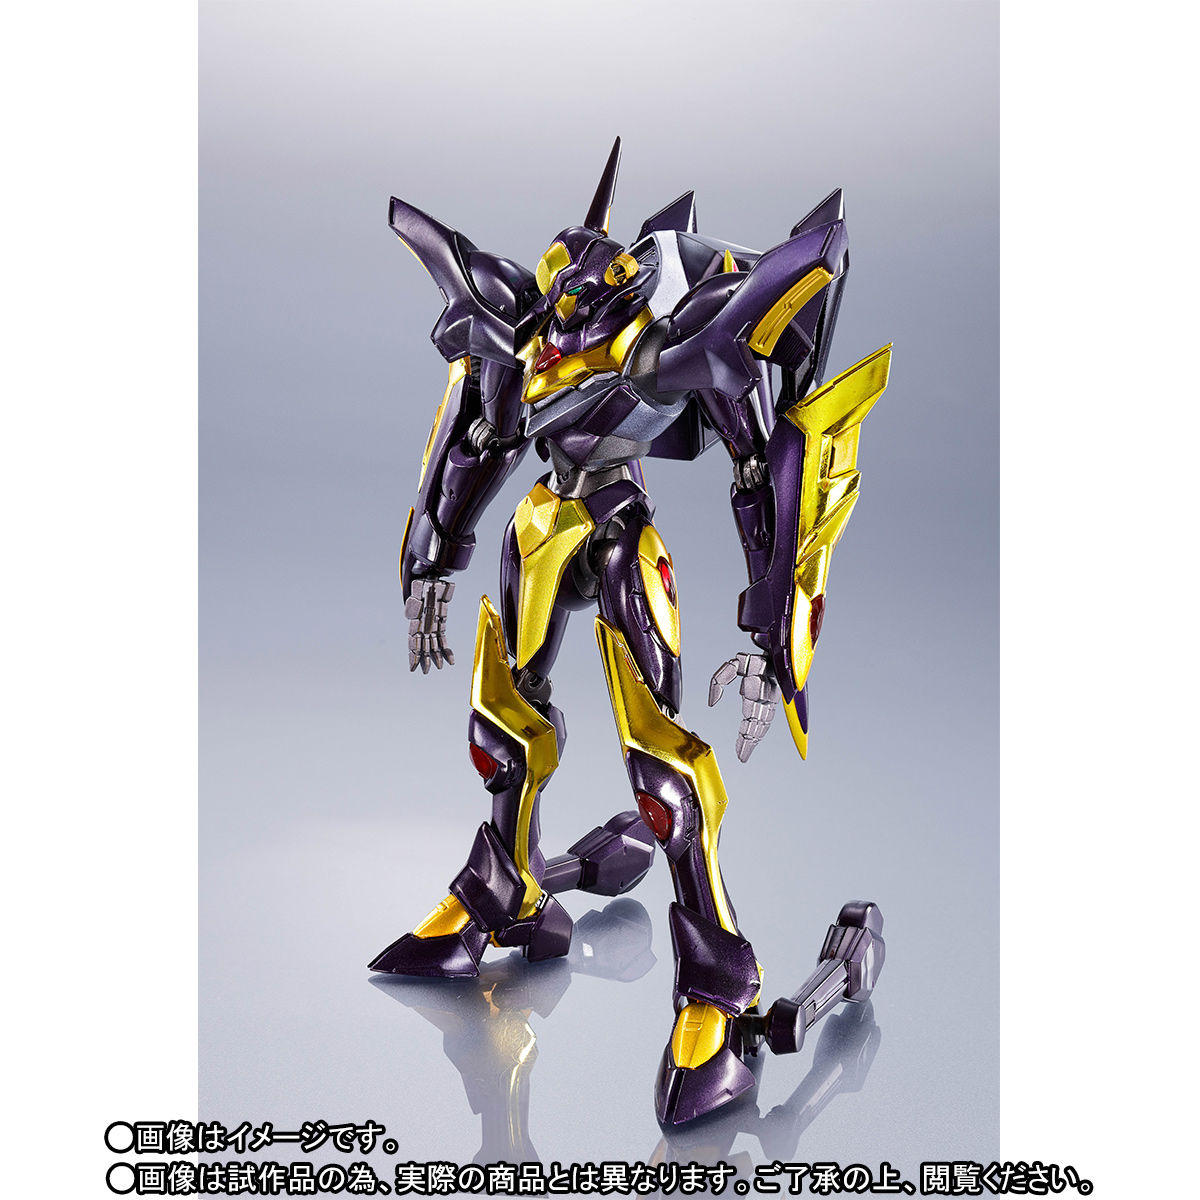 METAL ROBOT魂〈SIDE KMF〉『ランスロット・アルビオン ゼロ』コードギアス 可動フィギュア-008